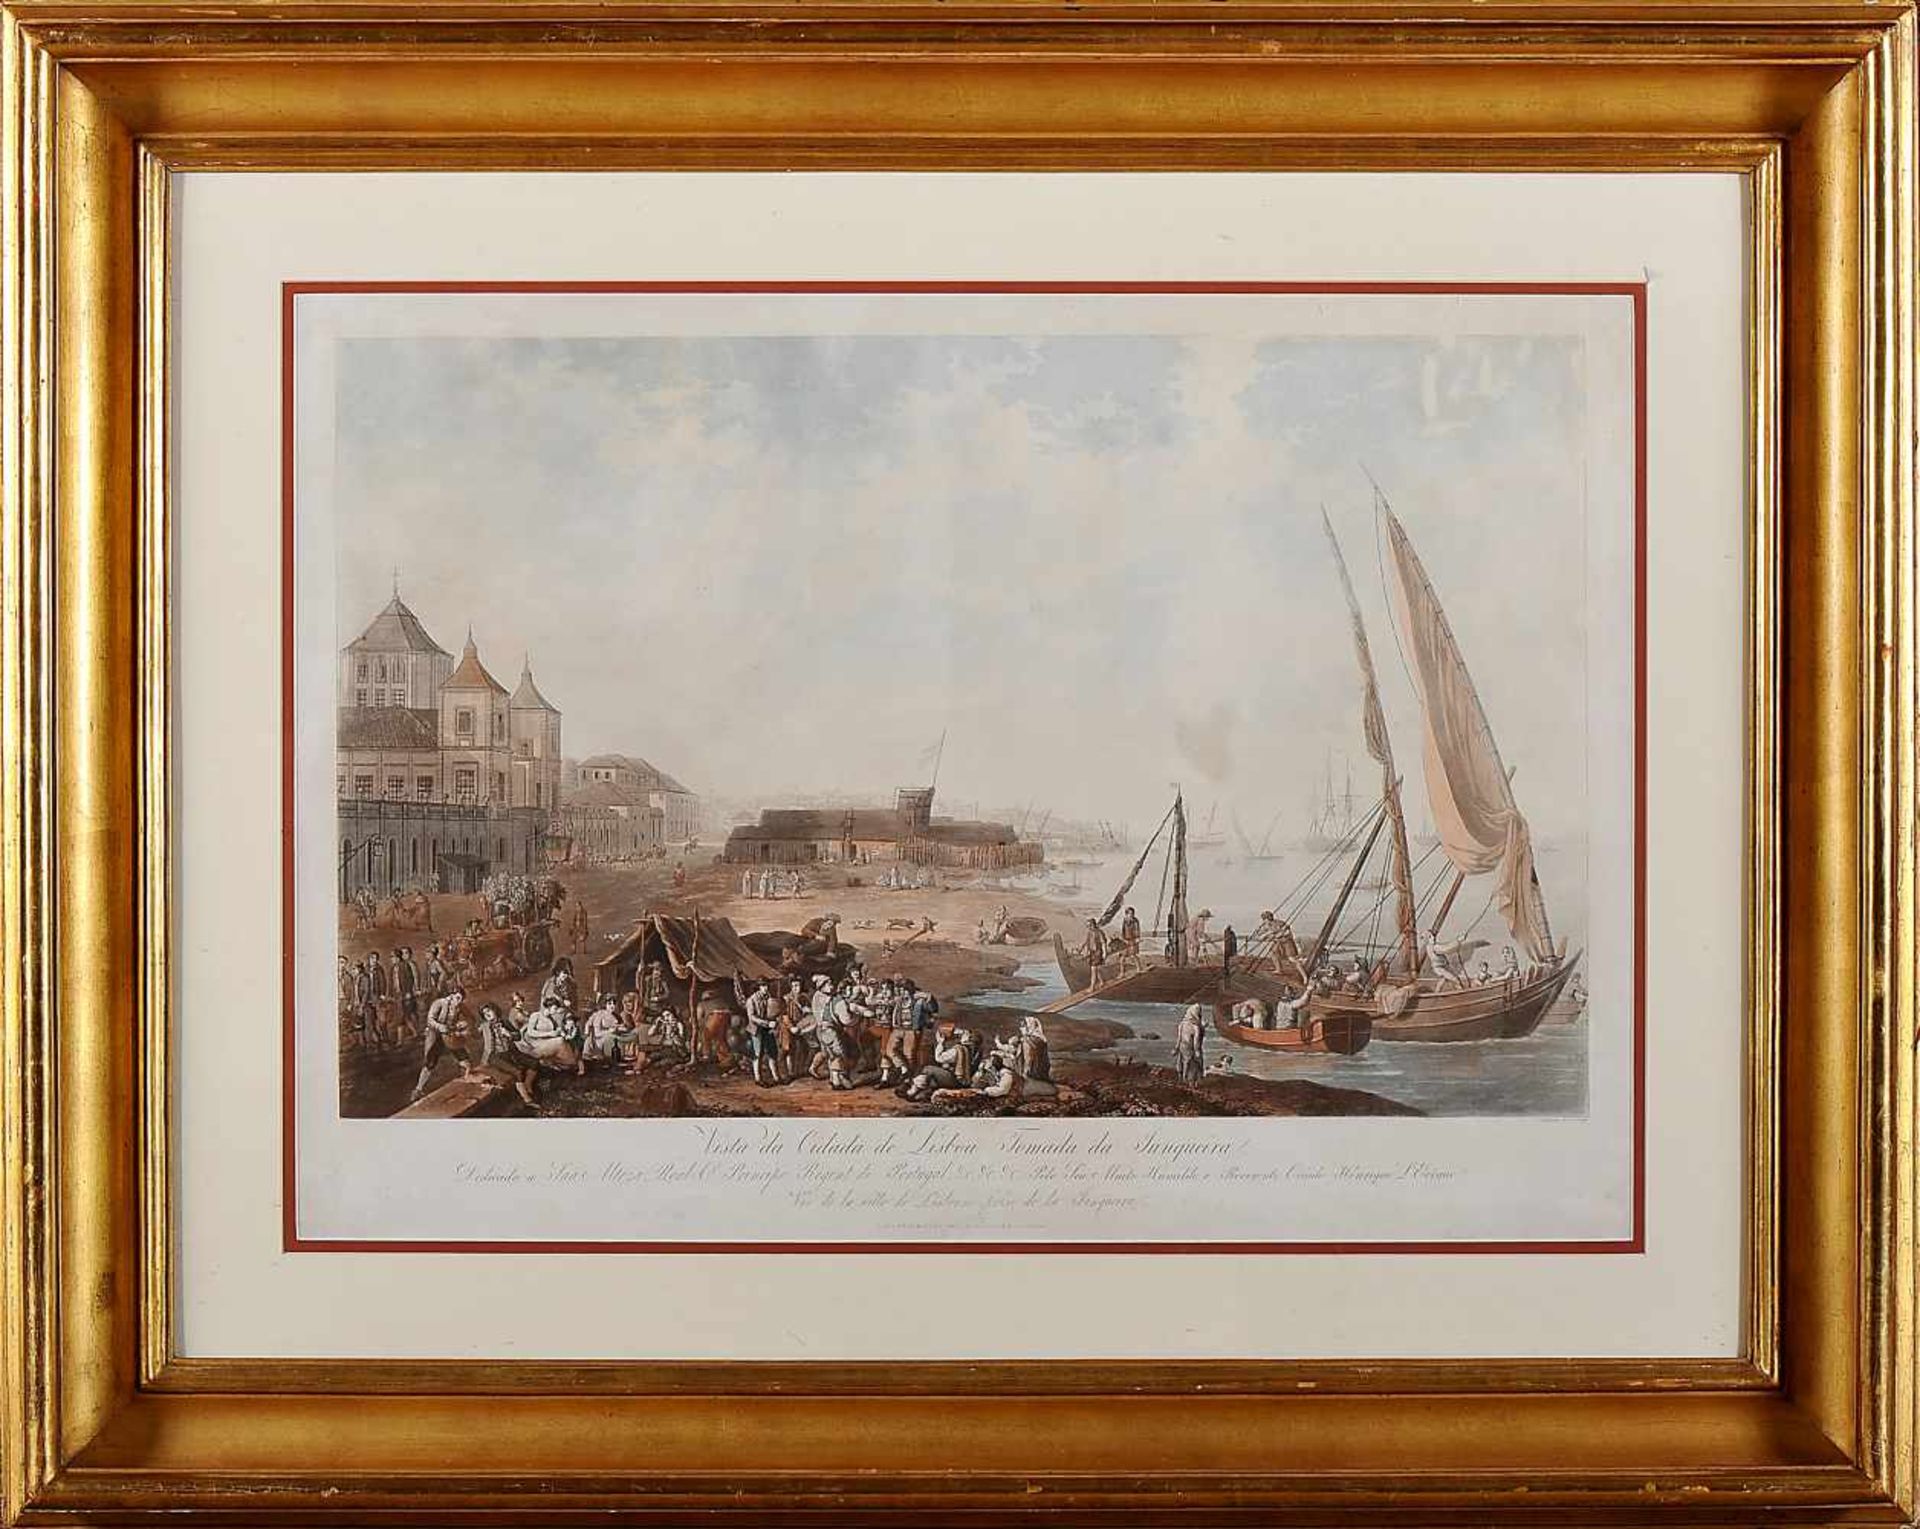 HENRY L'EVÊQUE - 1769-1832, "Vista da Cidade de Lisboa tomada da Junqueira", coloured engraving on